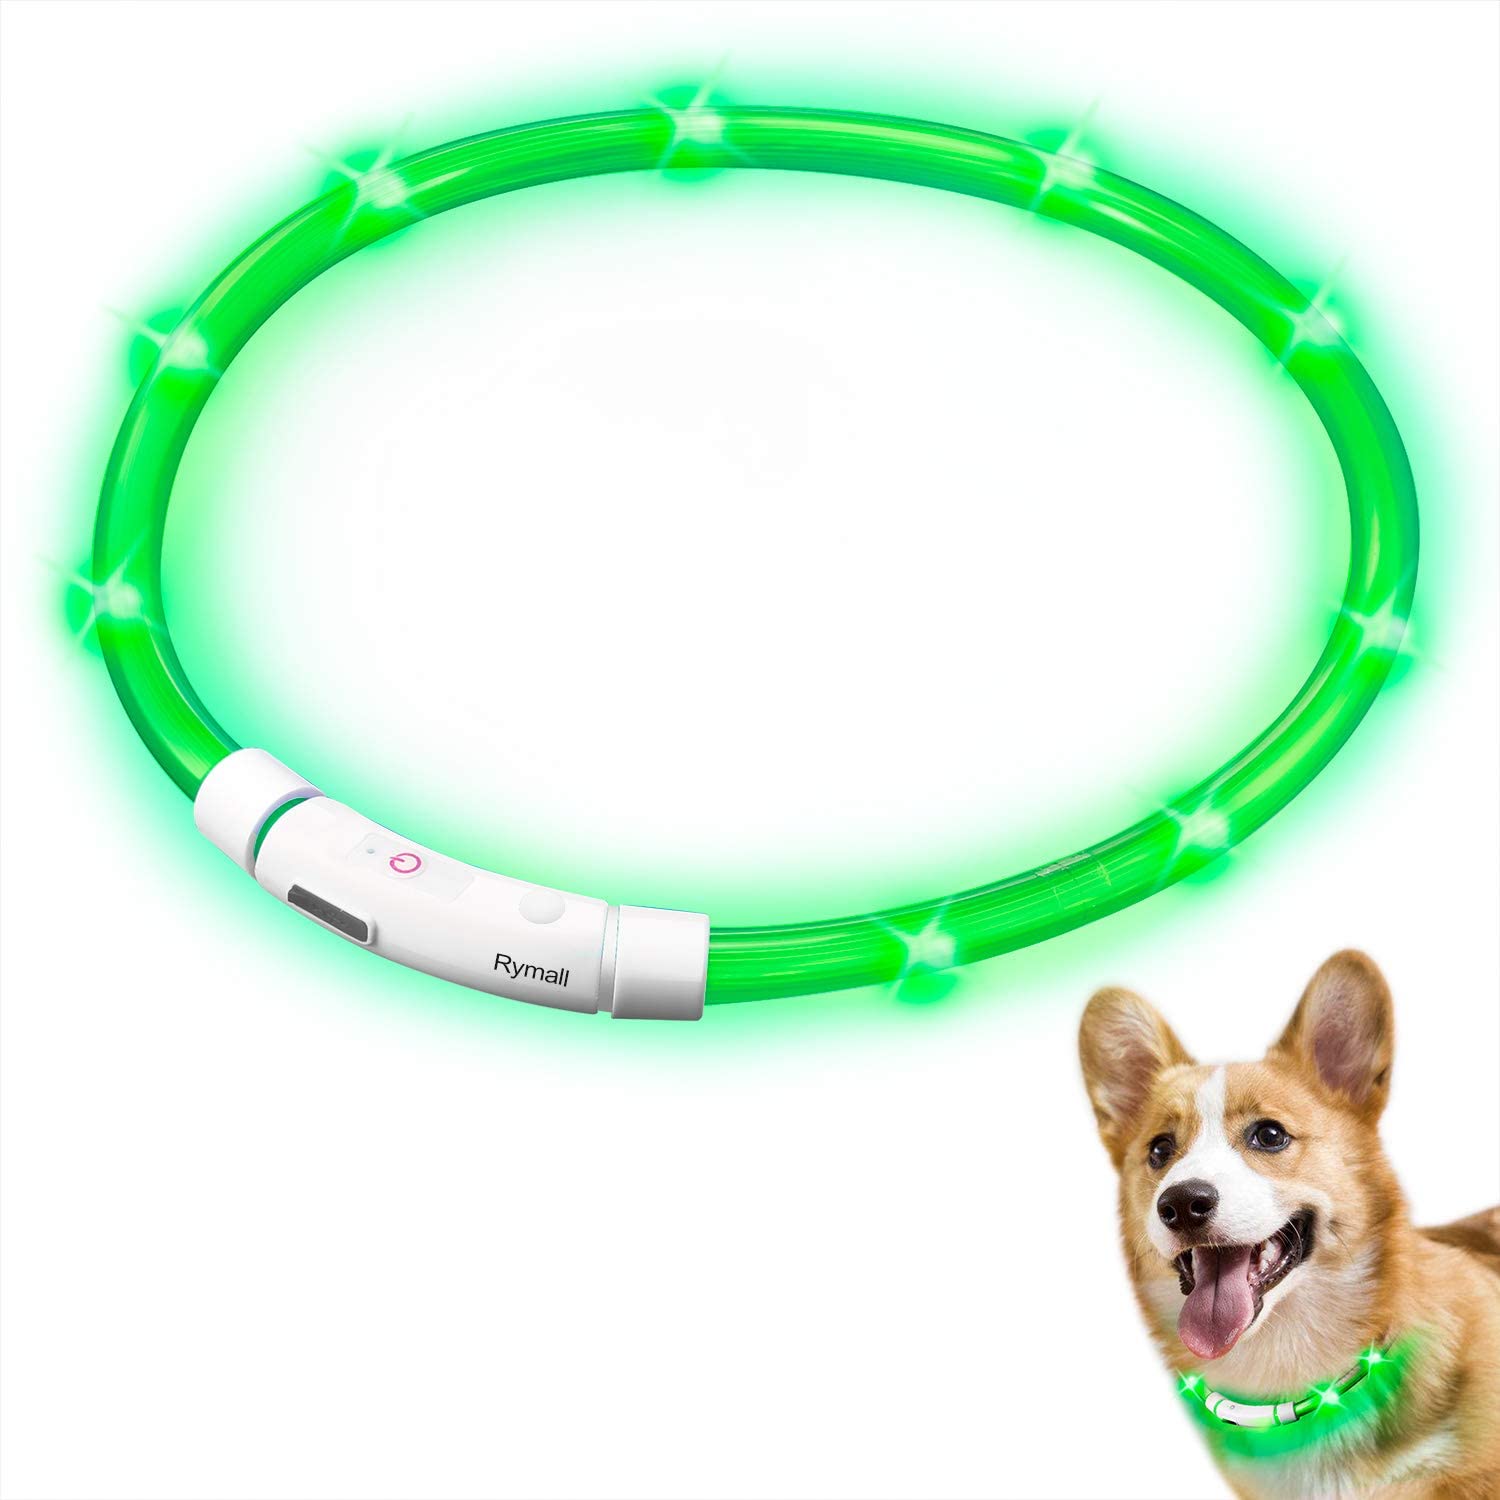  Collar para Perros, Collar de Seguridad para Perros, Rymall collar adiestramiento USB ajustable recargable impermeable LED parpadea luz Collar del animal doméstico, Verde 